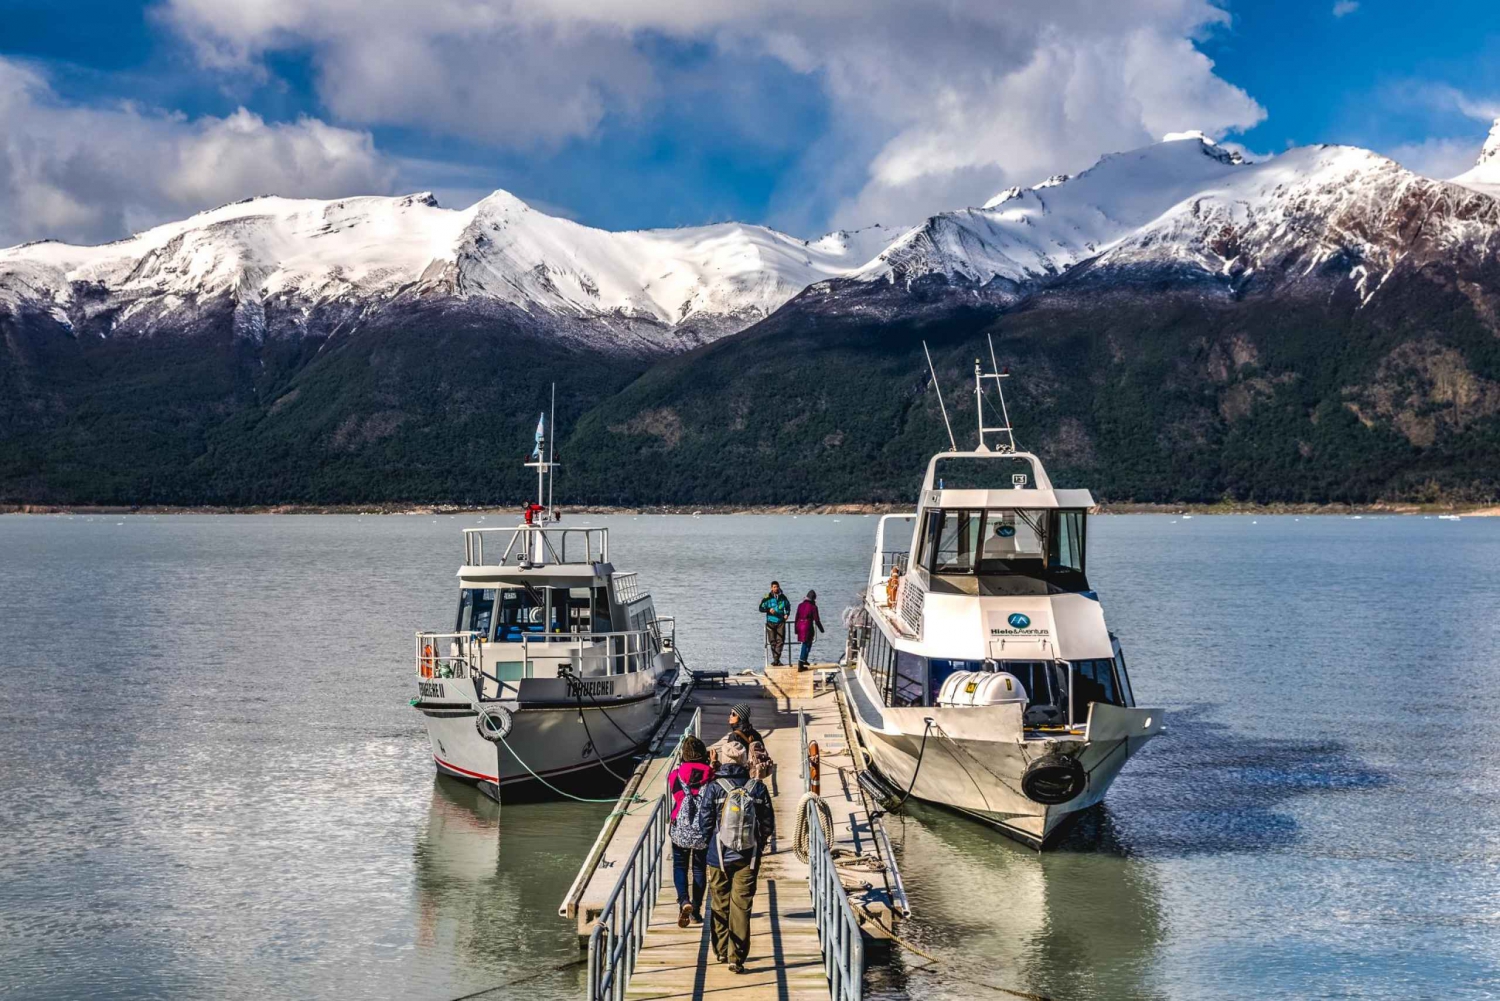 El Calafate: Perito Moreno Glacier Big Ice Trek